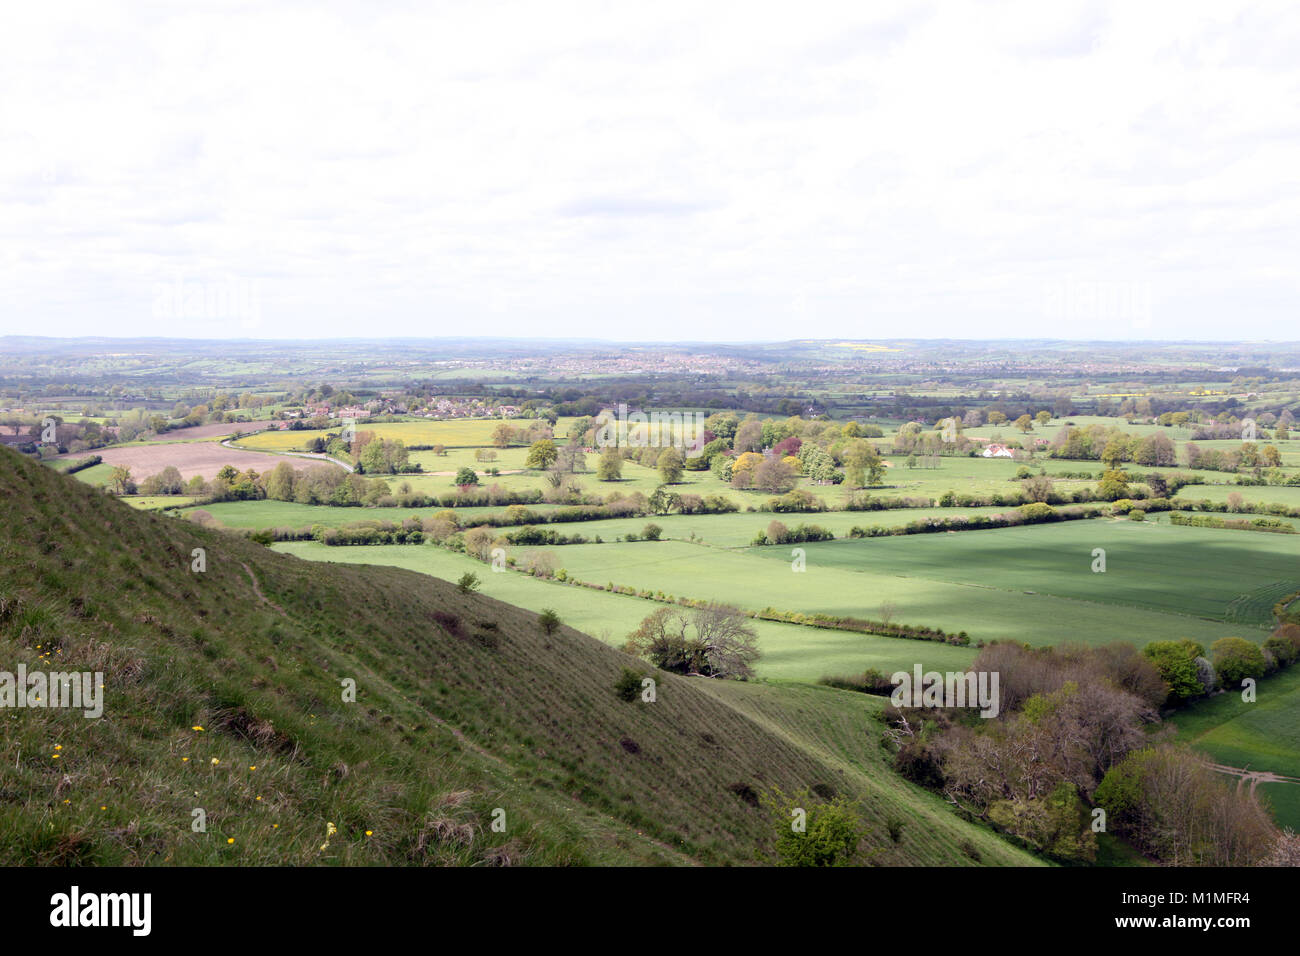 Vue sur la ville de frome de Claj Hill près de Longleat dans le Wiltshire. UK Banque D'Images